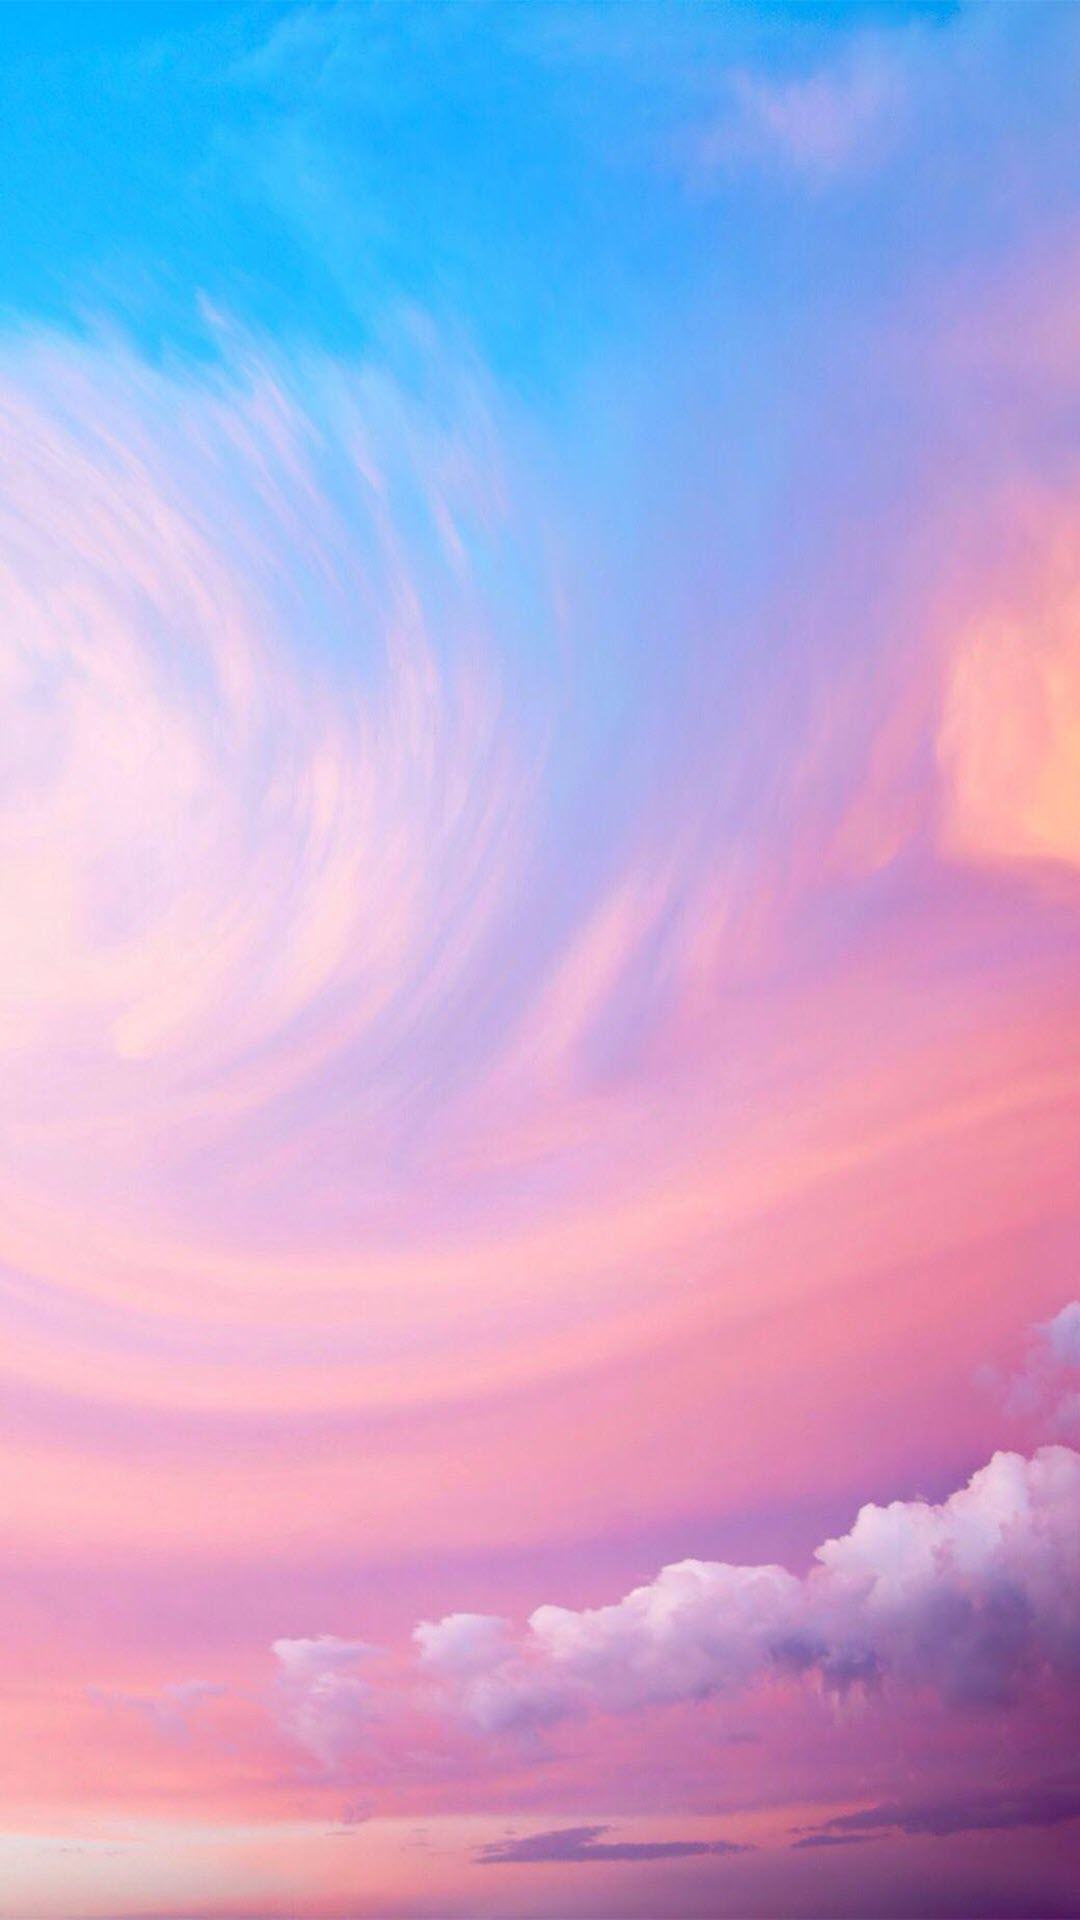 Bạn yêu thích không gian lãng mạn? Họa tiết hình nền bầu trời màu hồng đang chờ đón để làm mới màn hình điện thoại của bạn. Hãy cập nhật ngay để trải nghiệm khoảnh khắc đầy ngọt ngào mỗi khi nhìn vào điện thoại của mình.